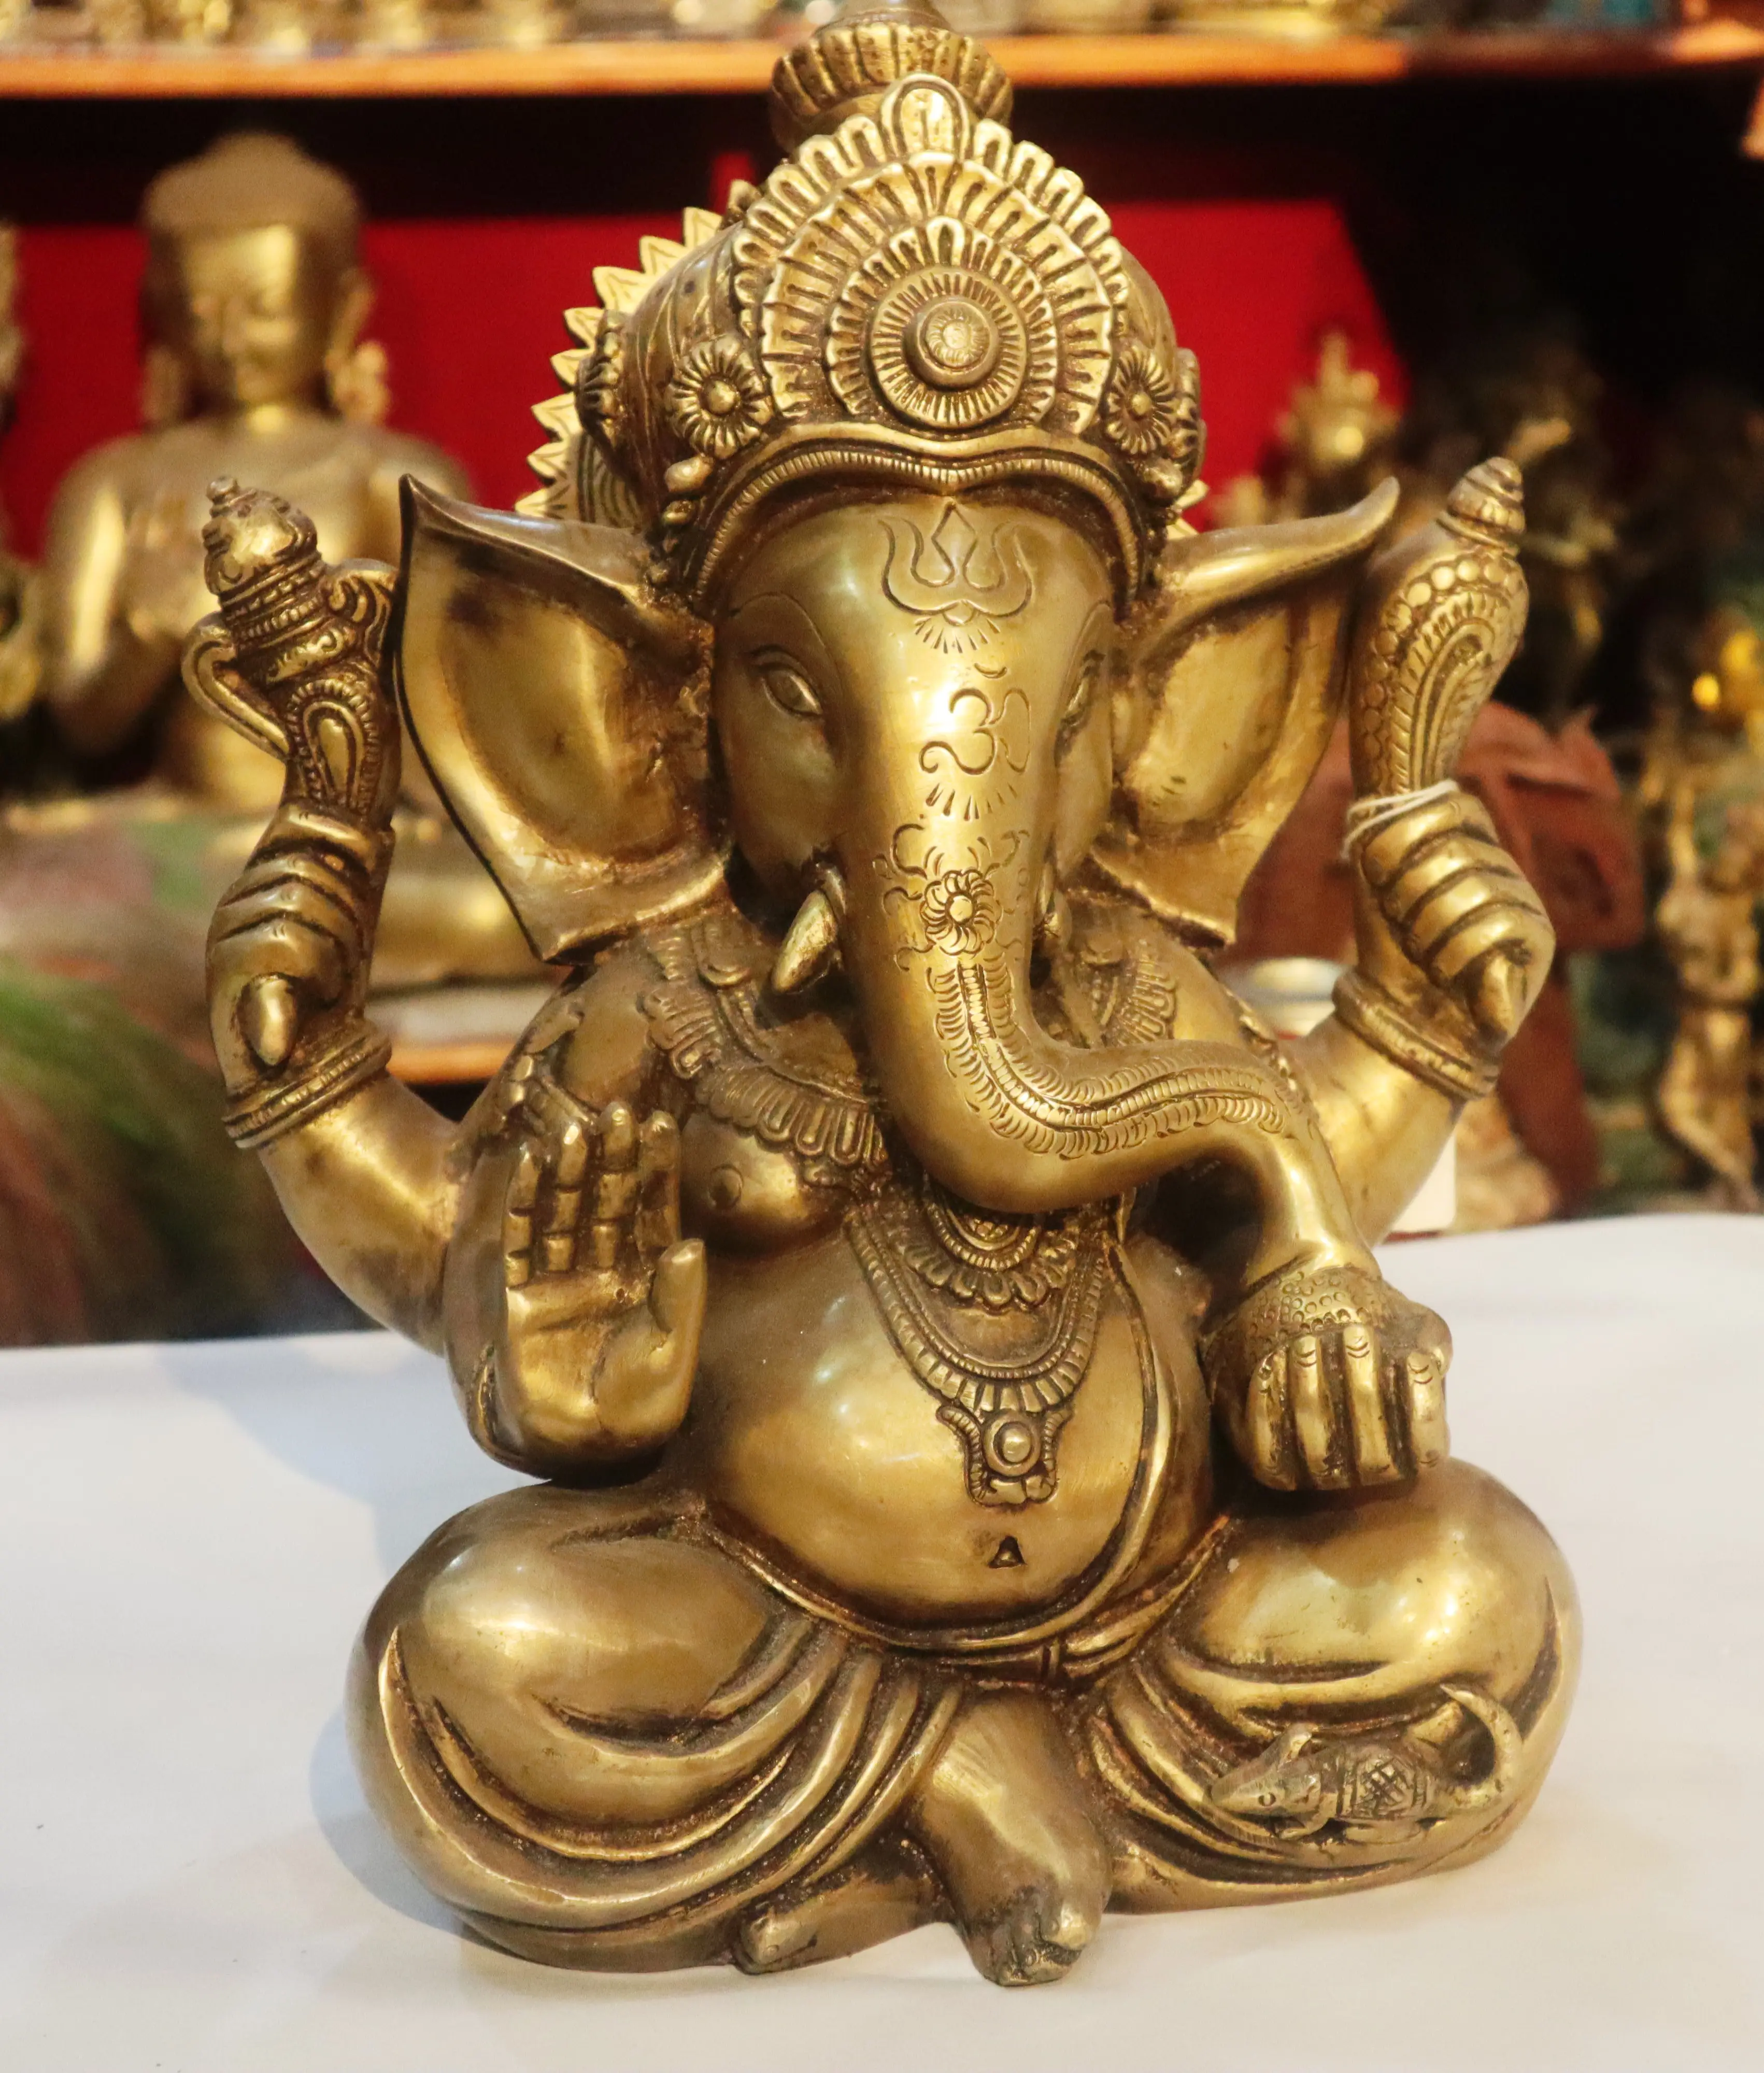 Patung Ganesh Buatan Tangan, 33 Inci Patung Gajah Hindu Dewa Sukses Kustom Patung Emas Ornamen Kreatif Seni Logam Kerajinan Agama